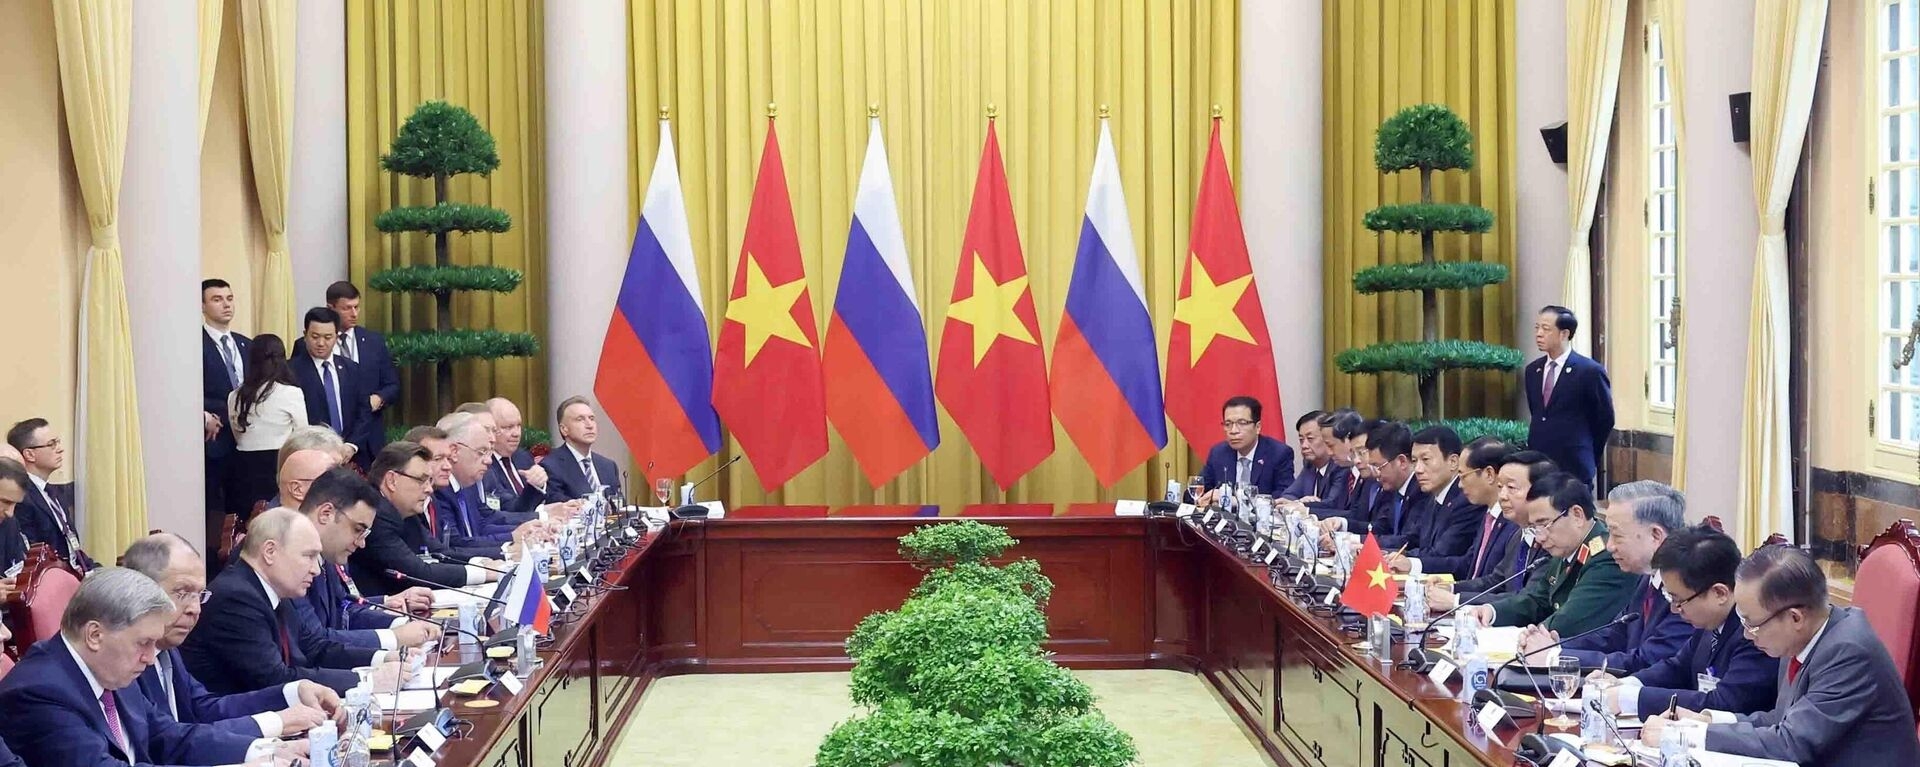 俄罗斯总统普京对越南进行国事访问欢迎仪式